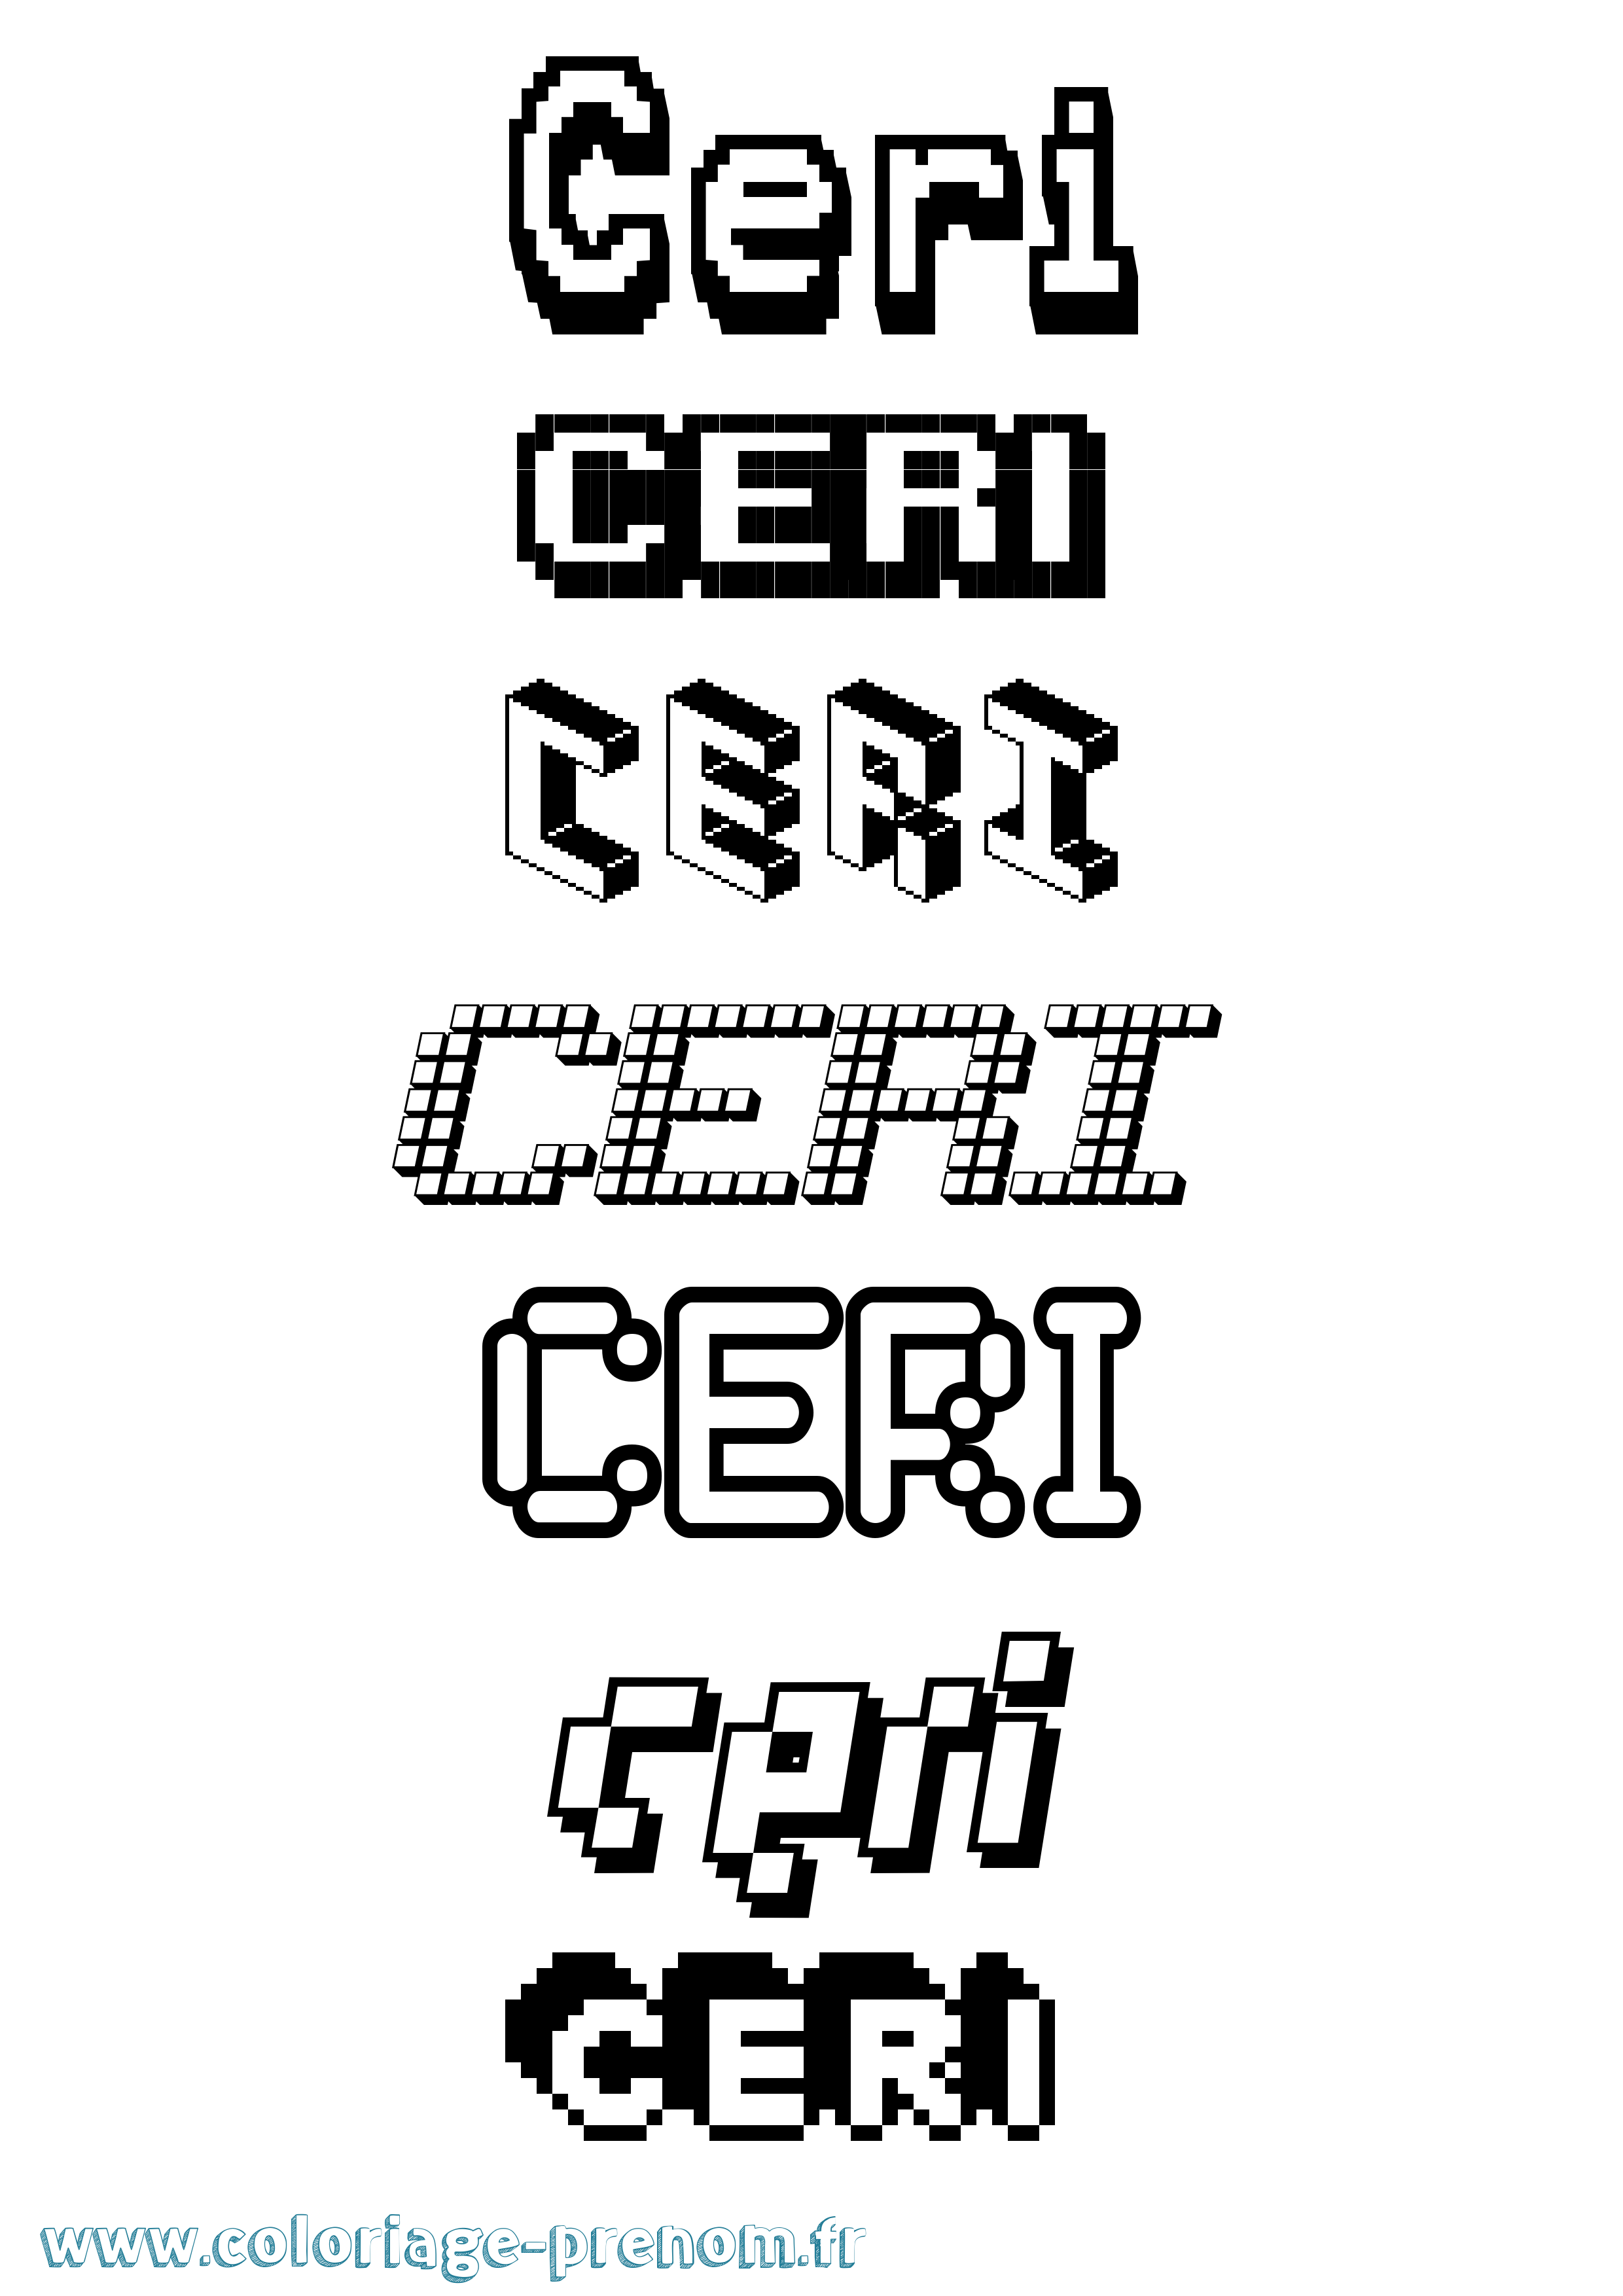 Coloriage prénom Ceri Pixel